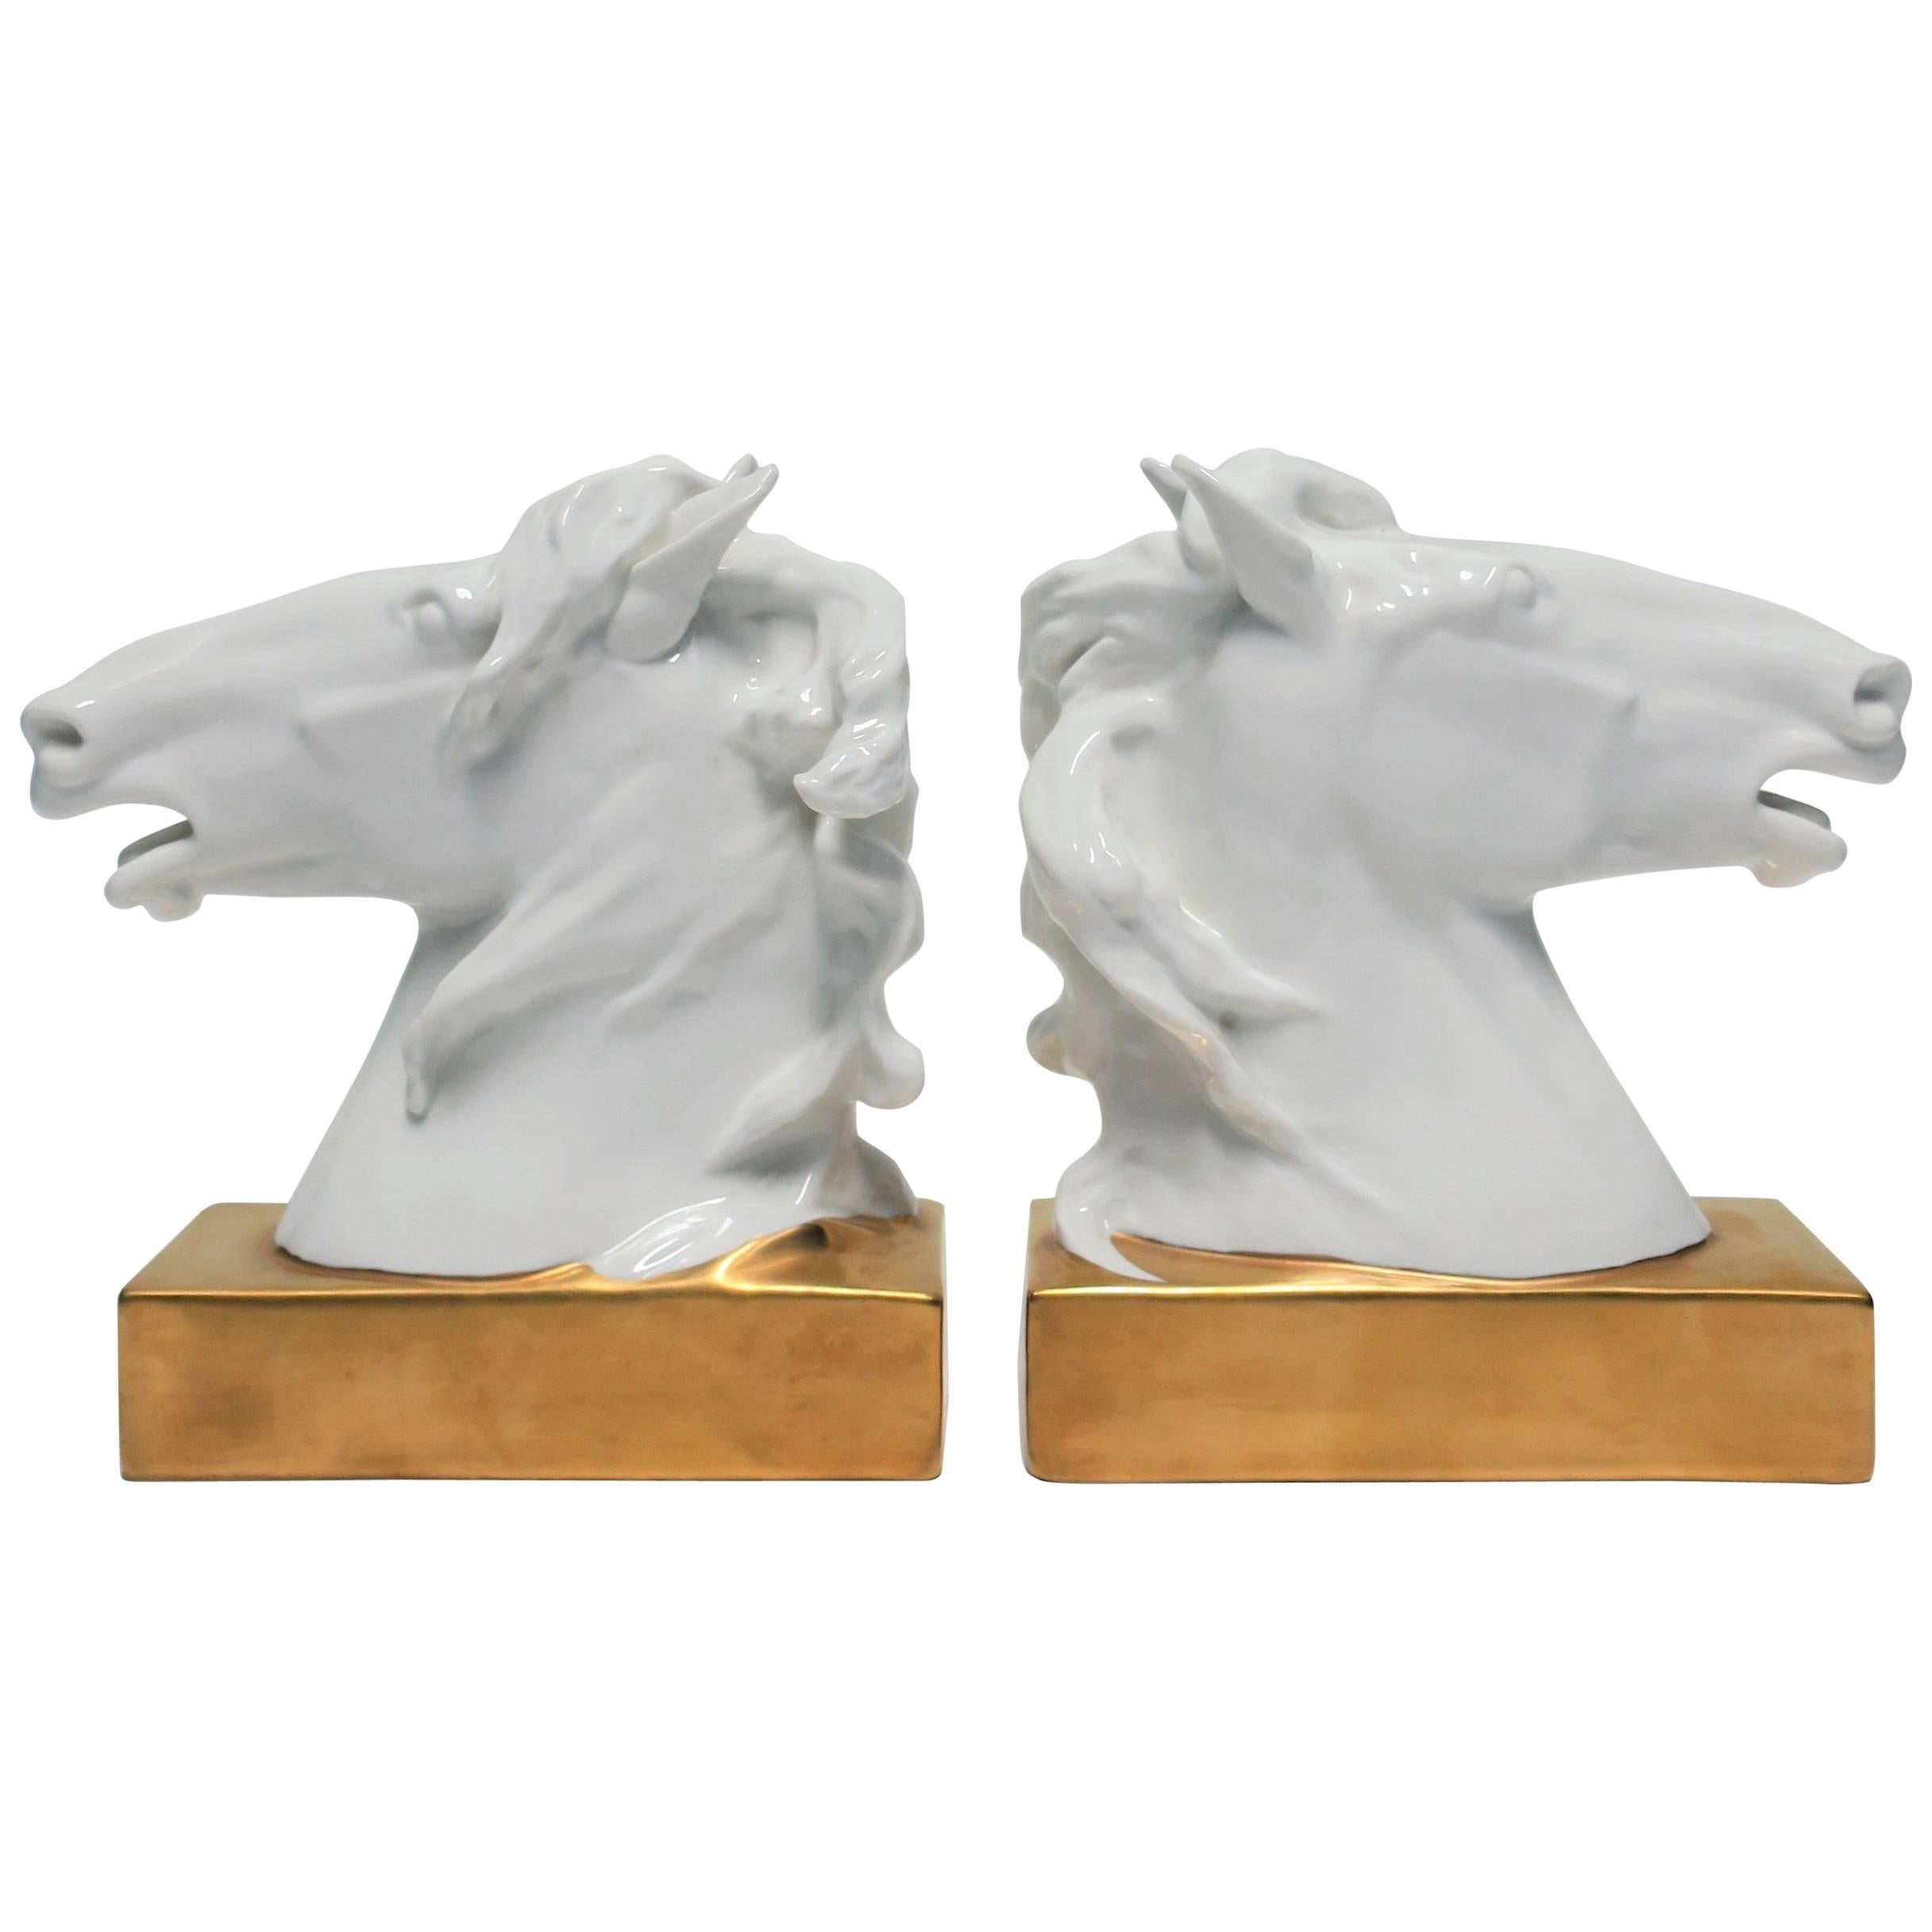 Porcelaine Cheval Equin Serre-livres ou Objects for Objects décoratifs Sculptures Européennes